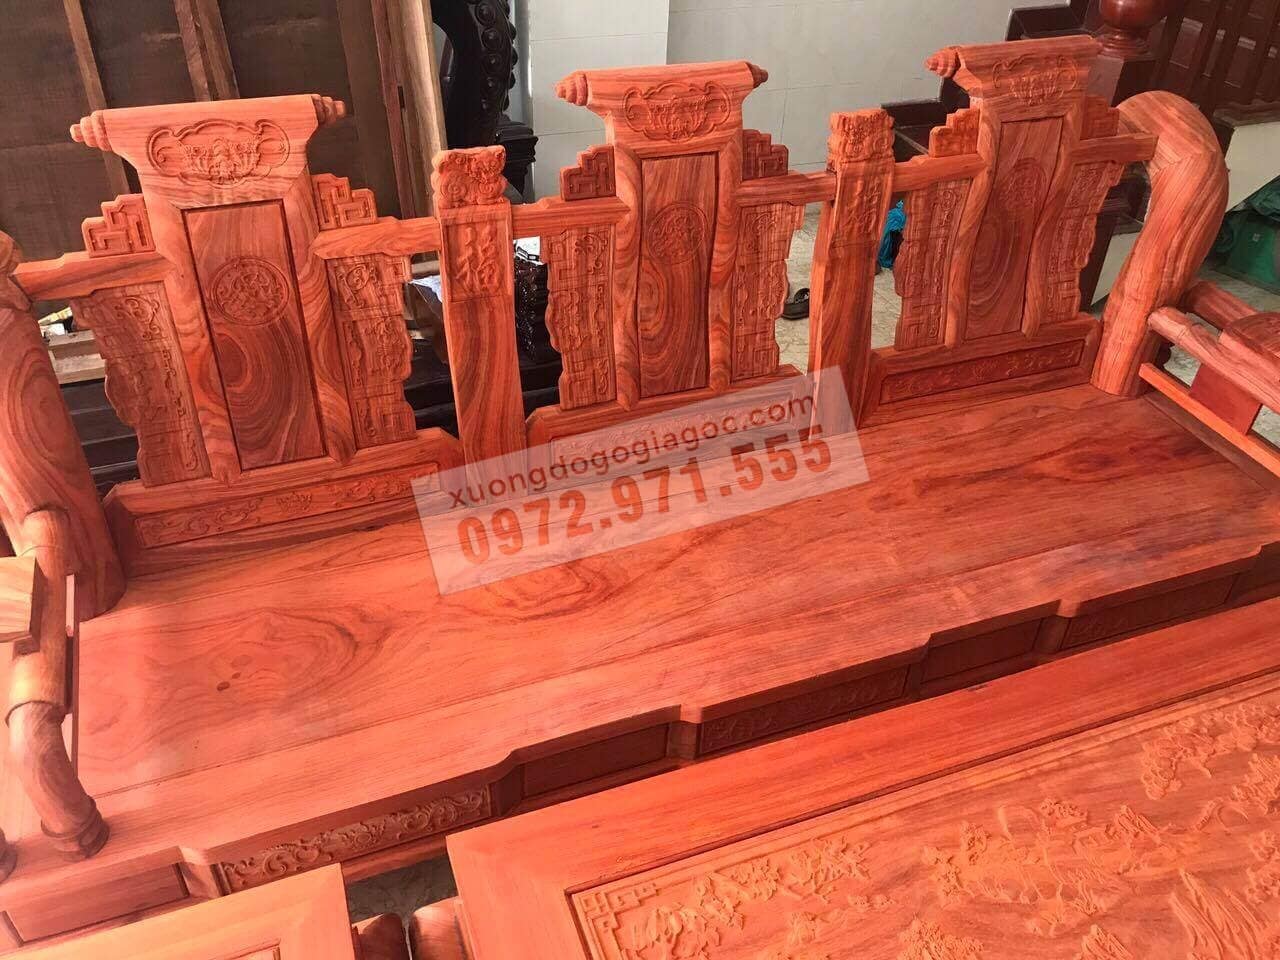 Với bộ bàn ghế Tần Thủy Hoàng gỗ hương đỏ Lào của chúng tôi, bạn sẽ tìm thấy sự kết hợp giữa gỗ hương đỏ độc đáo và hàng tuyển được chọn lọc kỹ càng. Các vân gỗ đẹp mắt cùng với độ bền và chất lượng cao của sản phẩm sẽ khiến bạn hài lòng. Xem ngay hình ảnh để khám phá thêm về sản phẩm này.